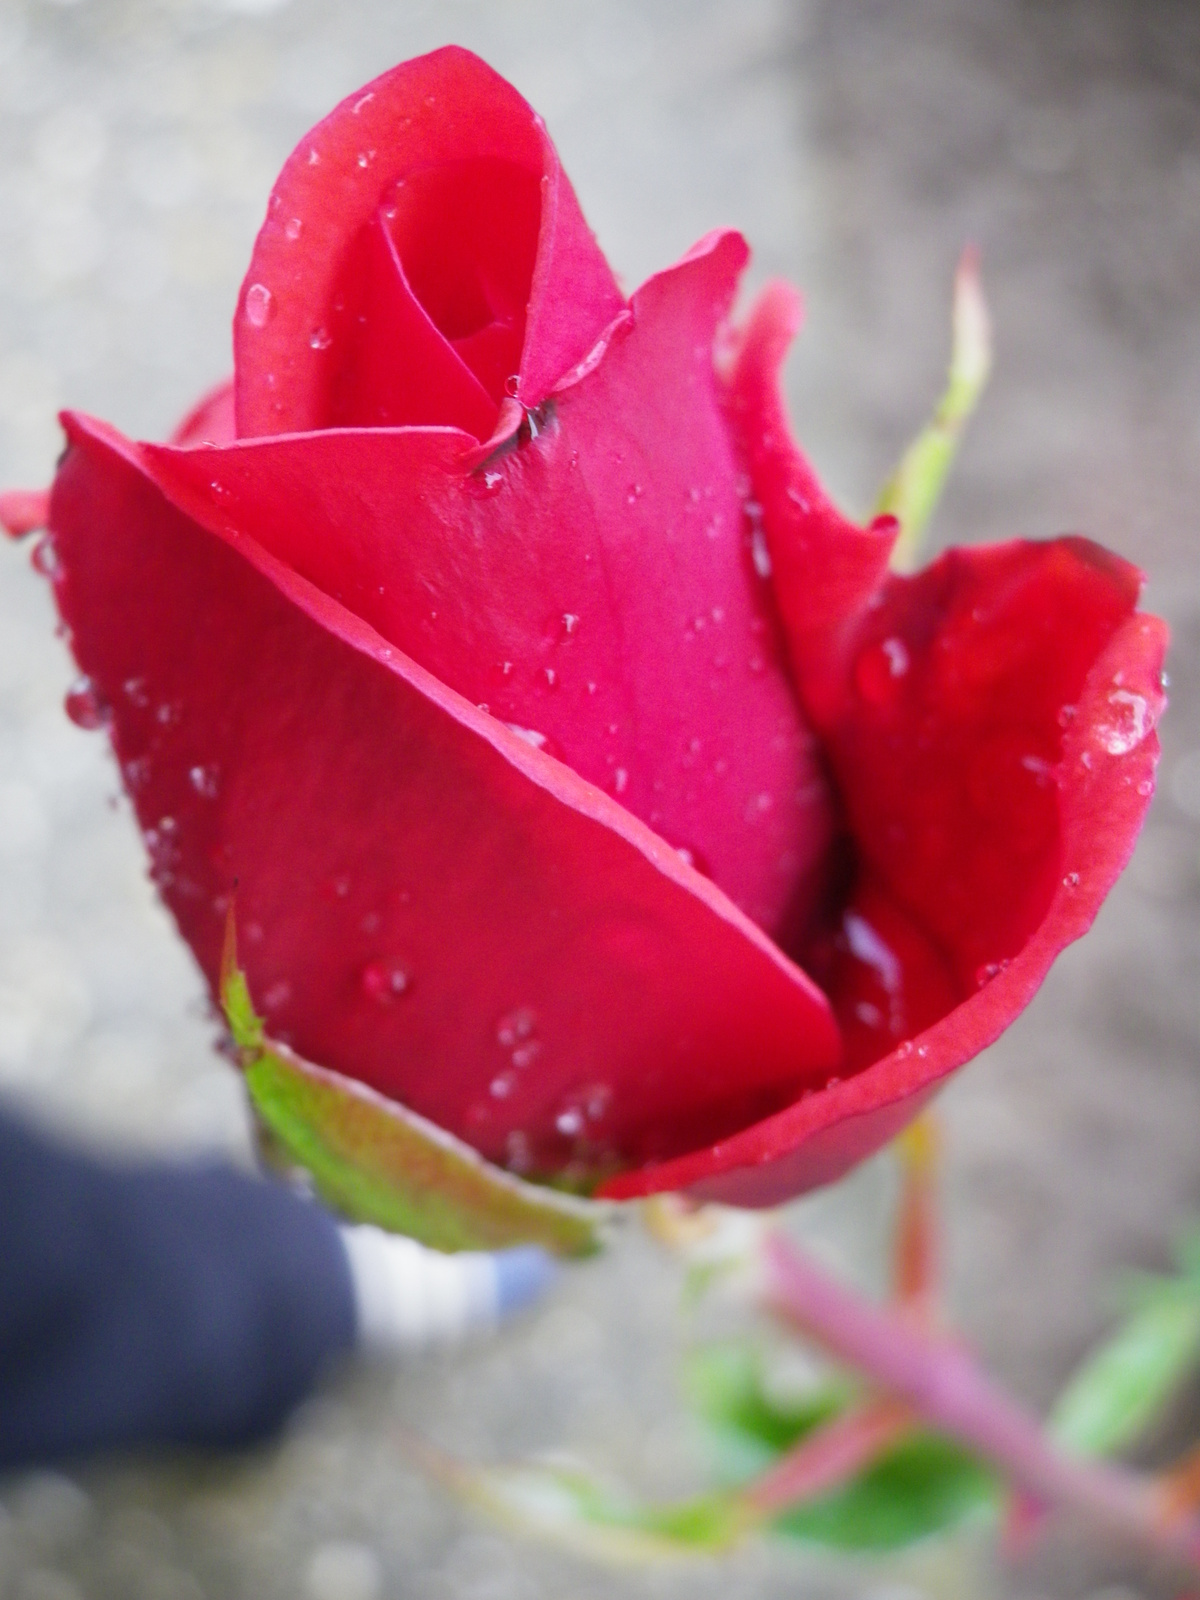 vörös rózsa esőcseppekkel